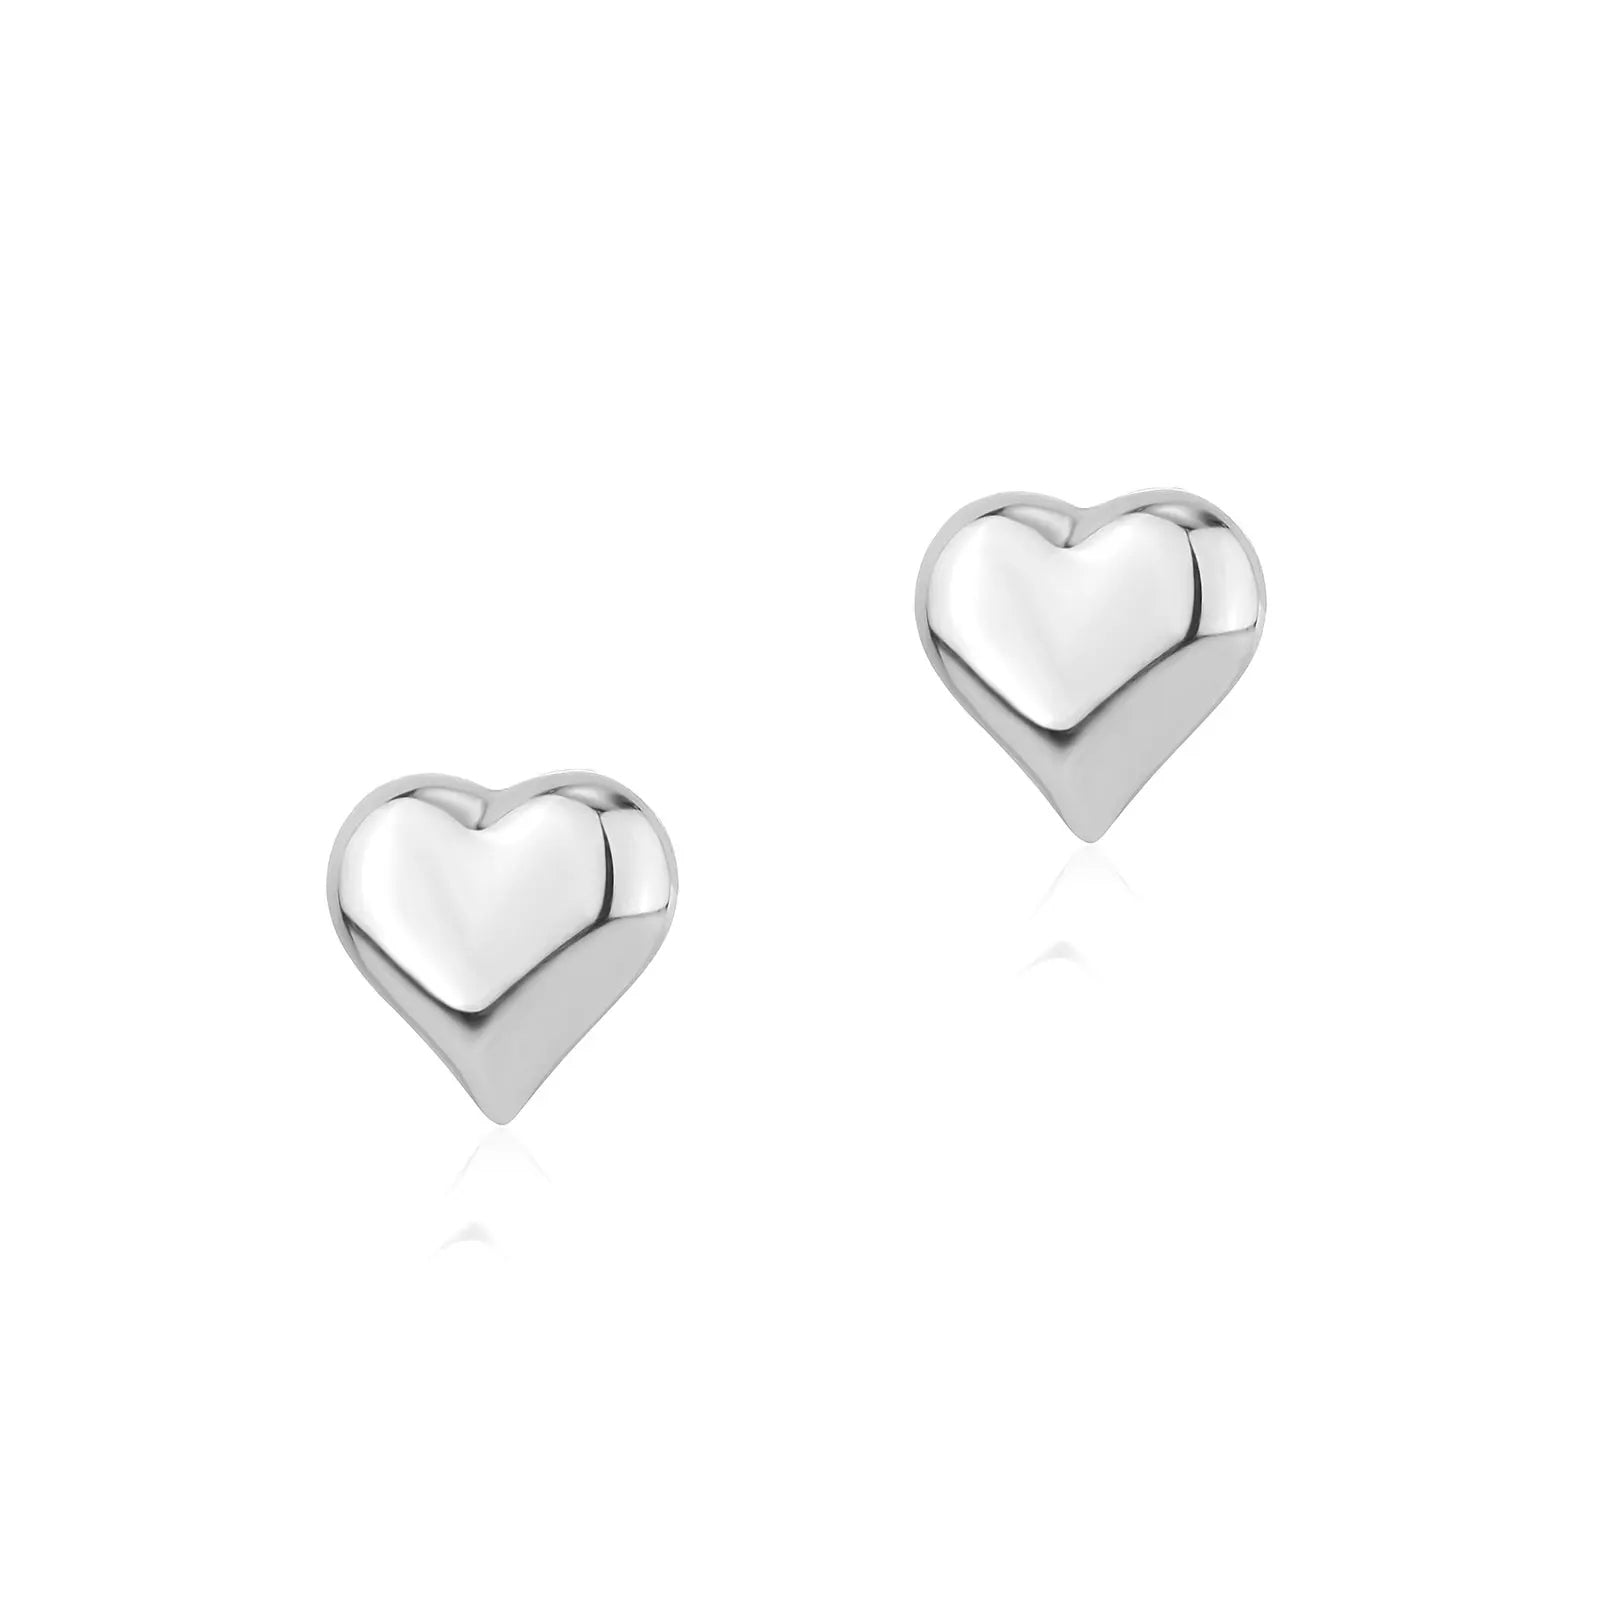 Kute Heart Earrings